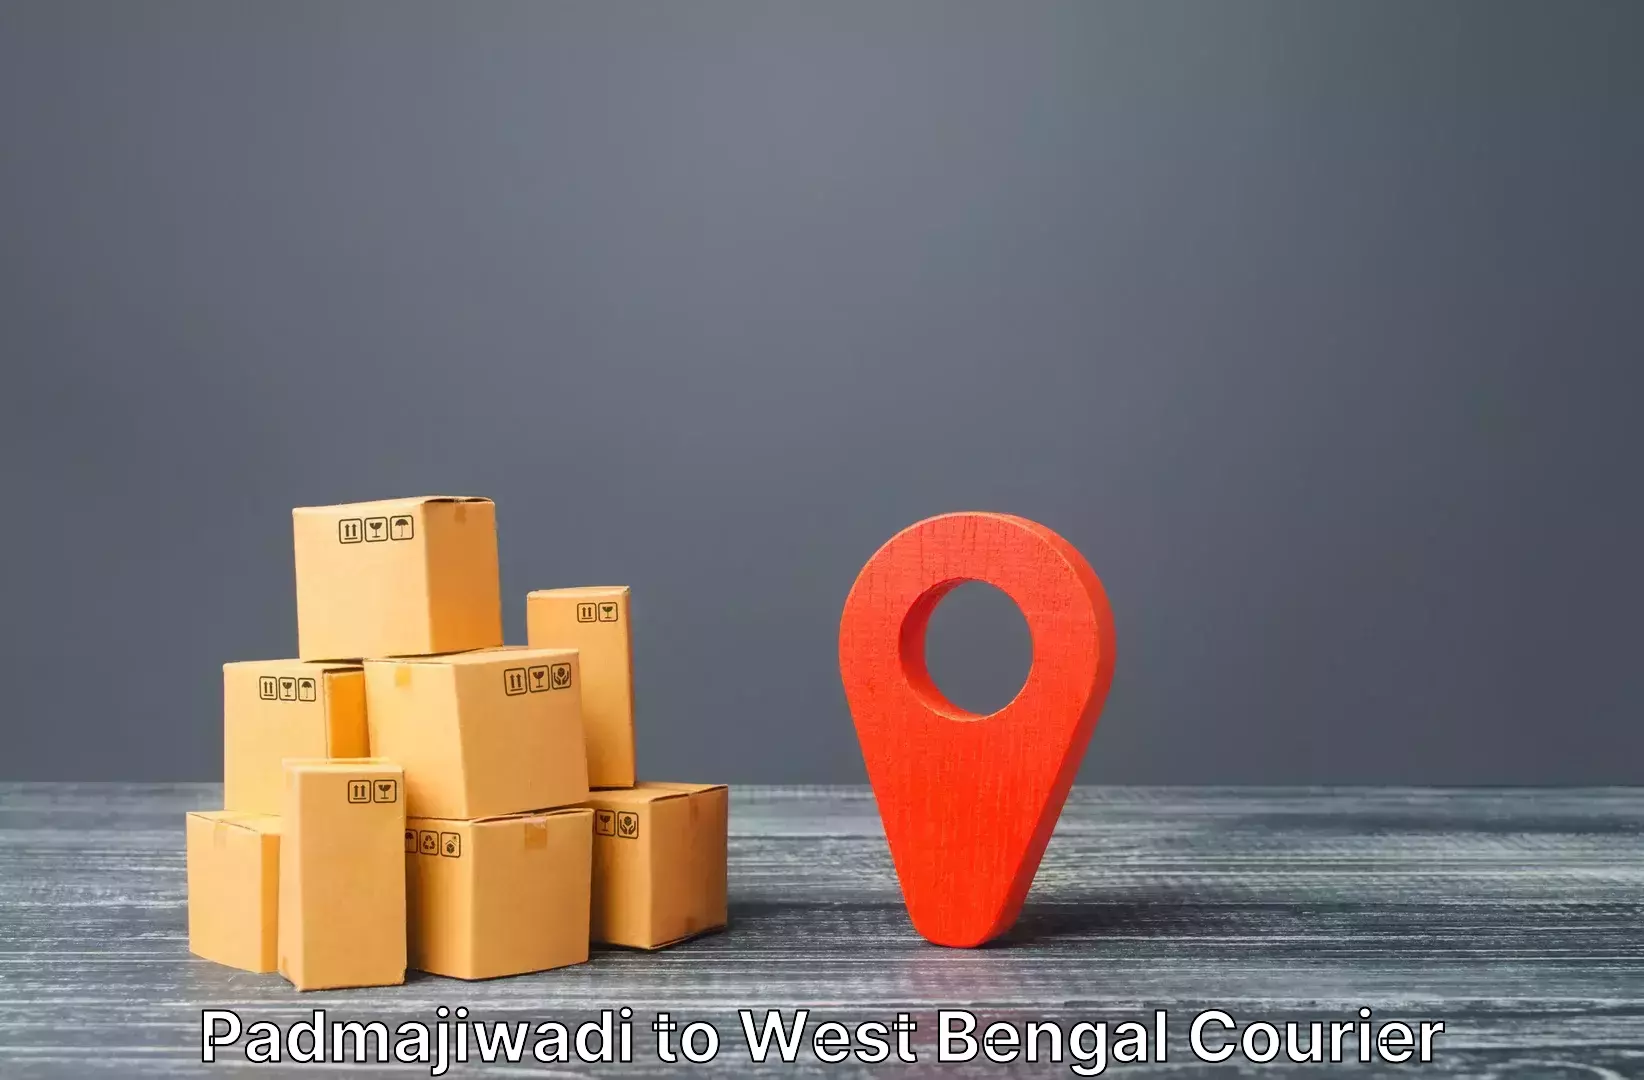 Luggage dispatch service Padmajiwadi to Dalkhola